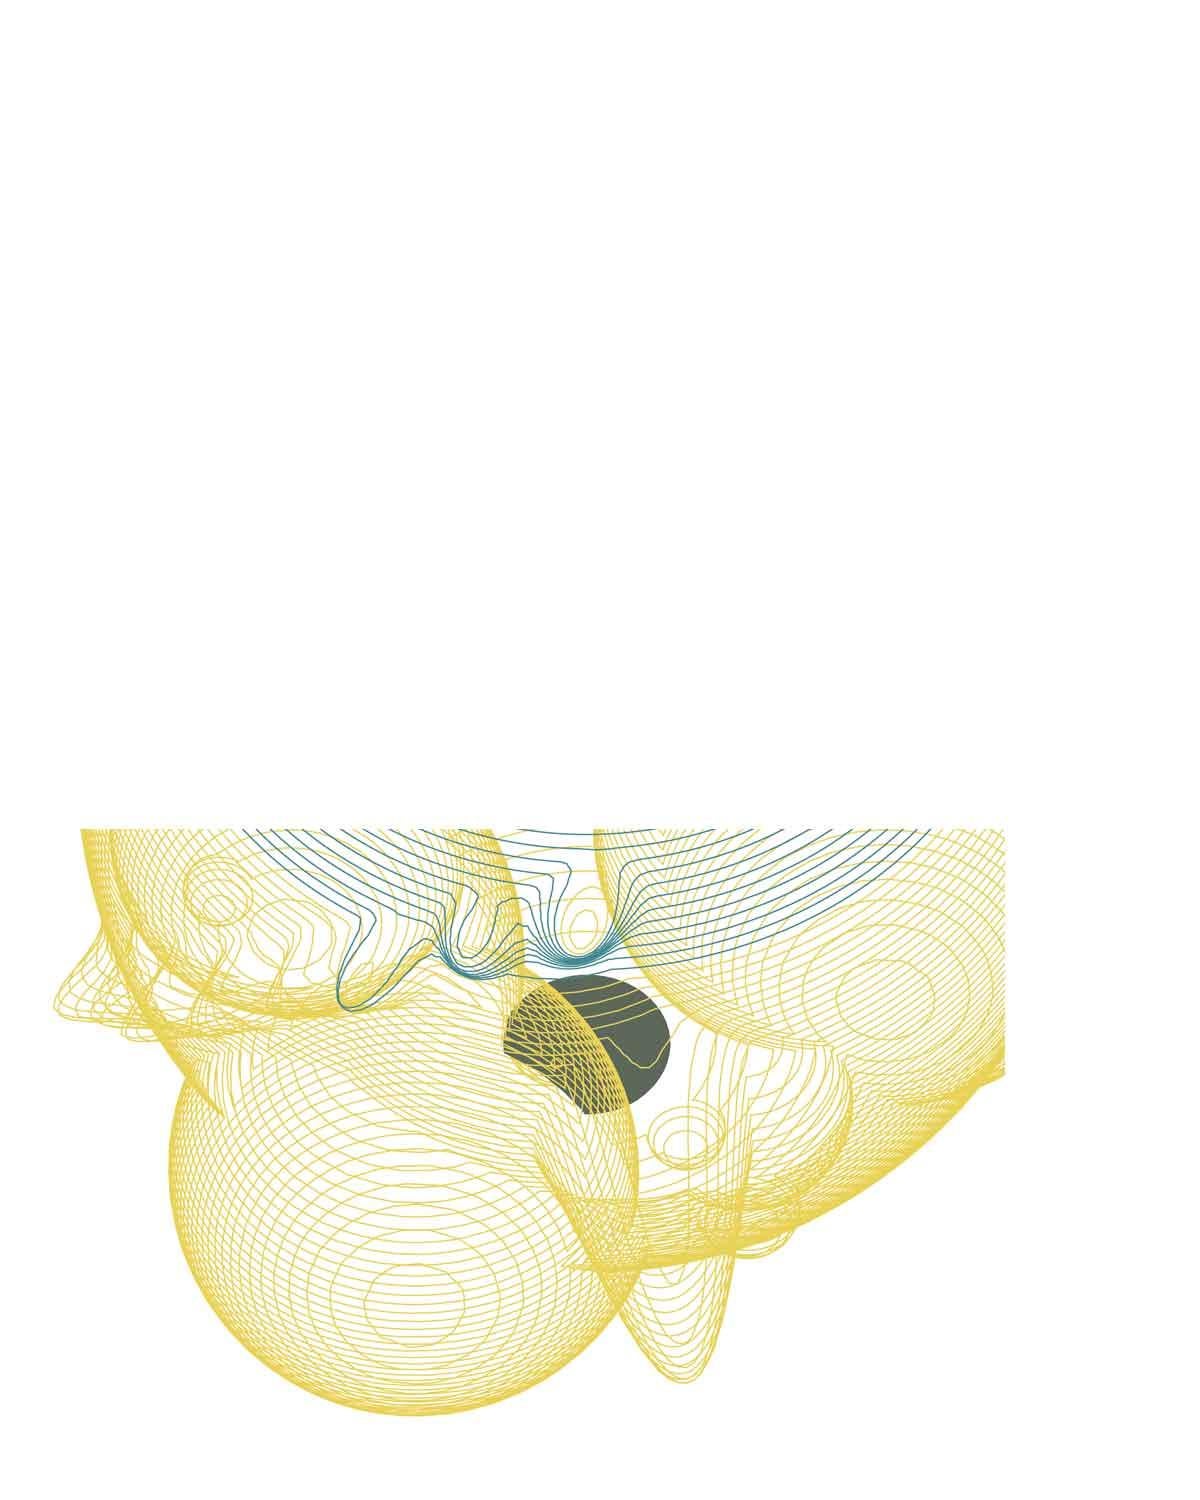 Gelber Raumteiler – zeitgenössisch, abstrakt, modern, surrealistisch (Geometrische Abstraktion), Print, von Nicole Lin